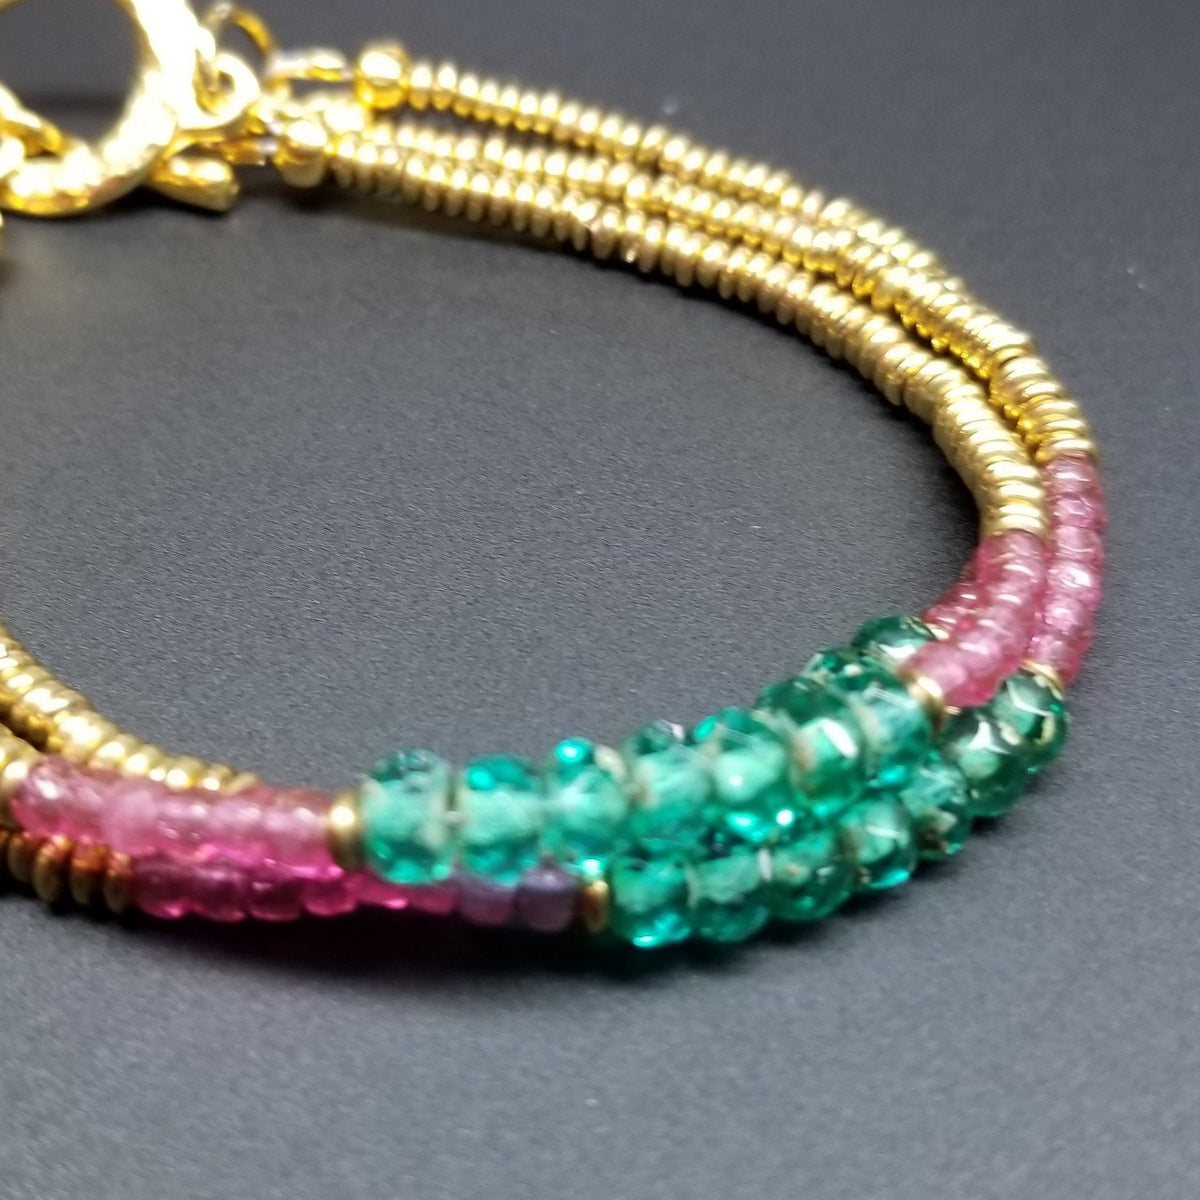 Sparkling green Czech bead bracelet